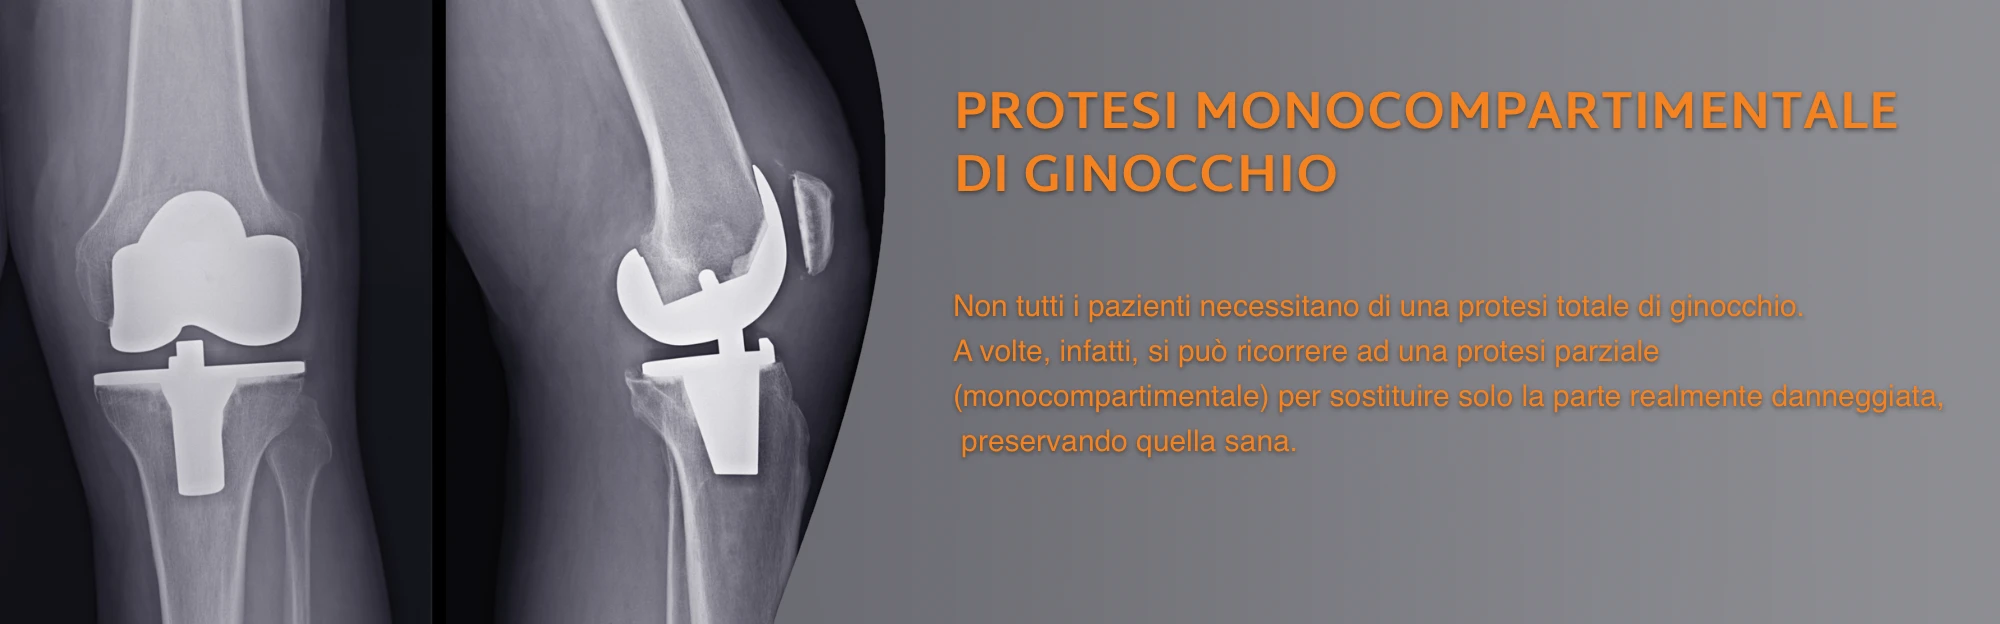 protesi ginocchio monocompartimentale